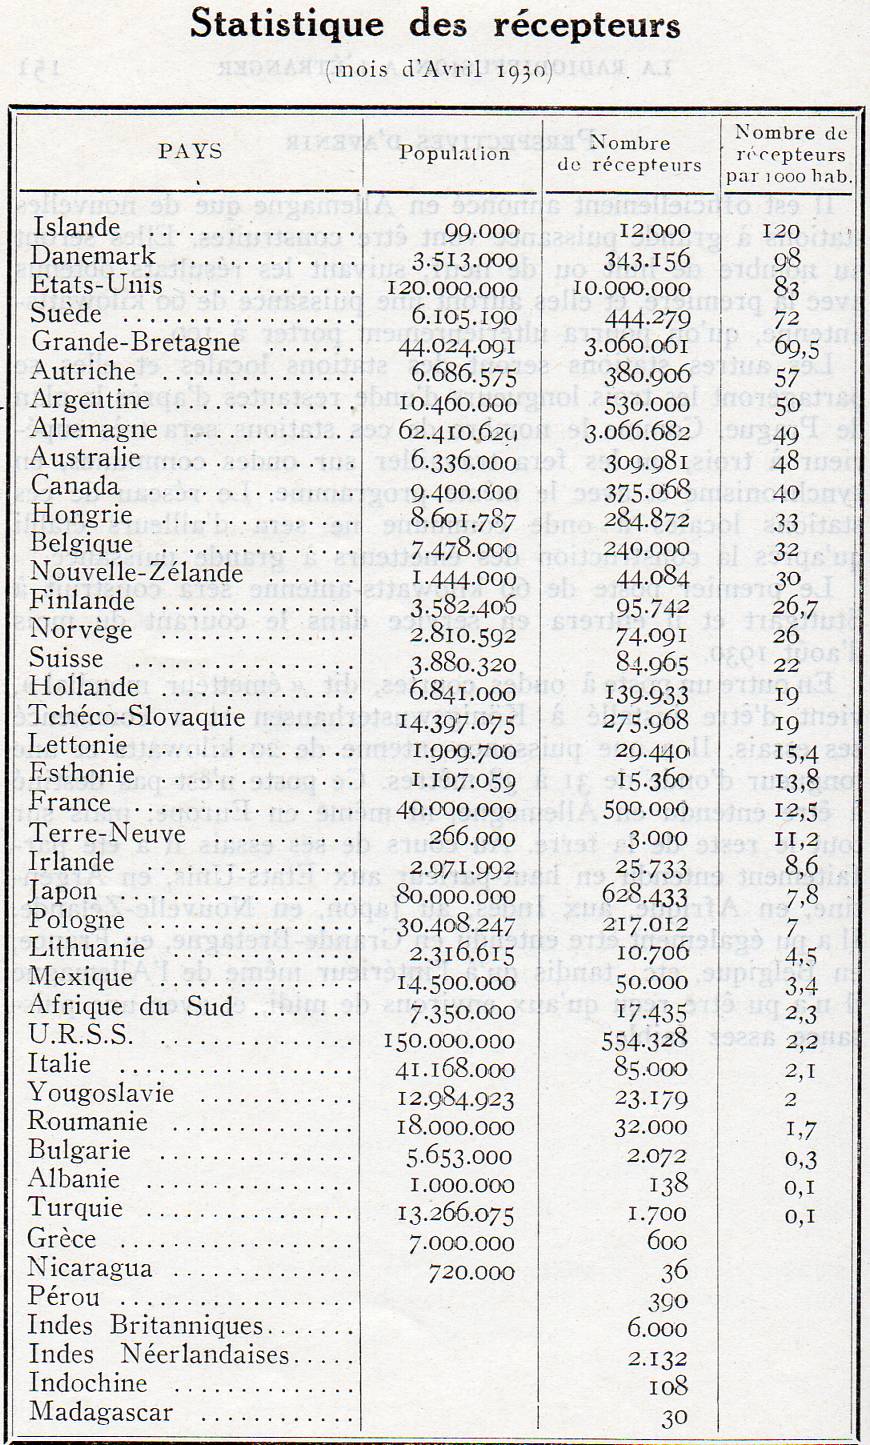 Statistiques récepteurs 1930